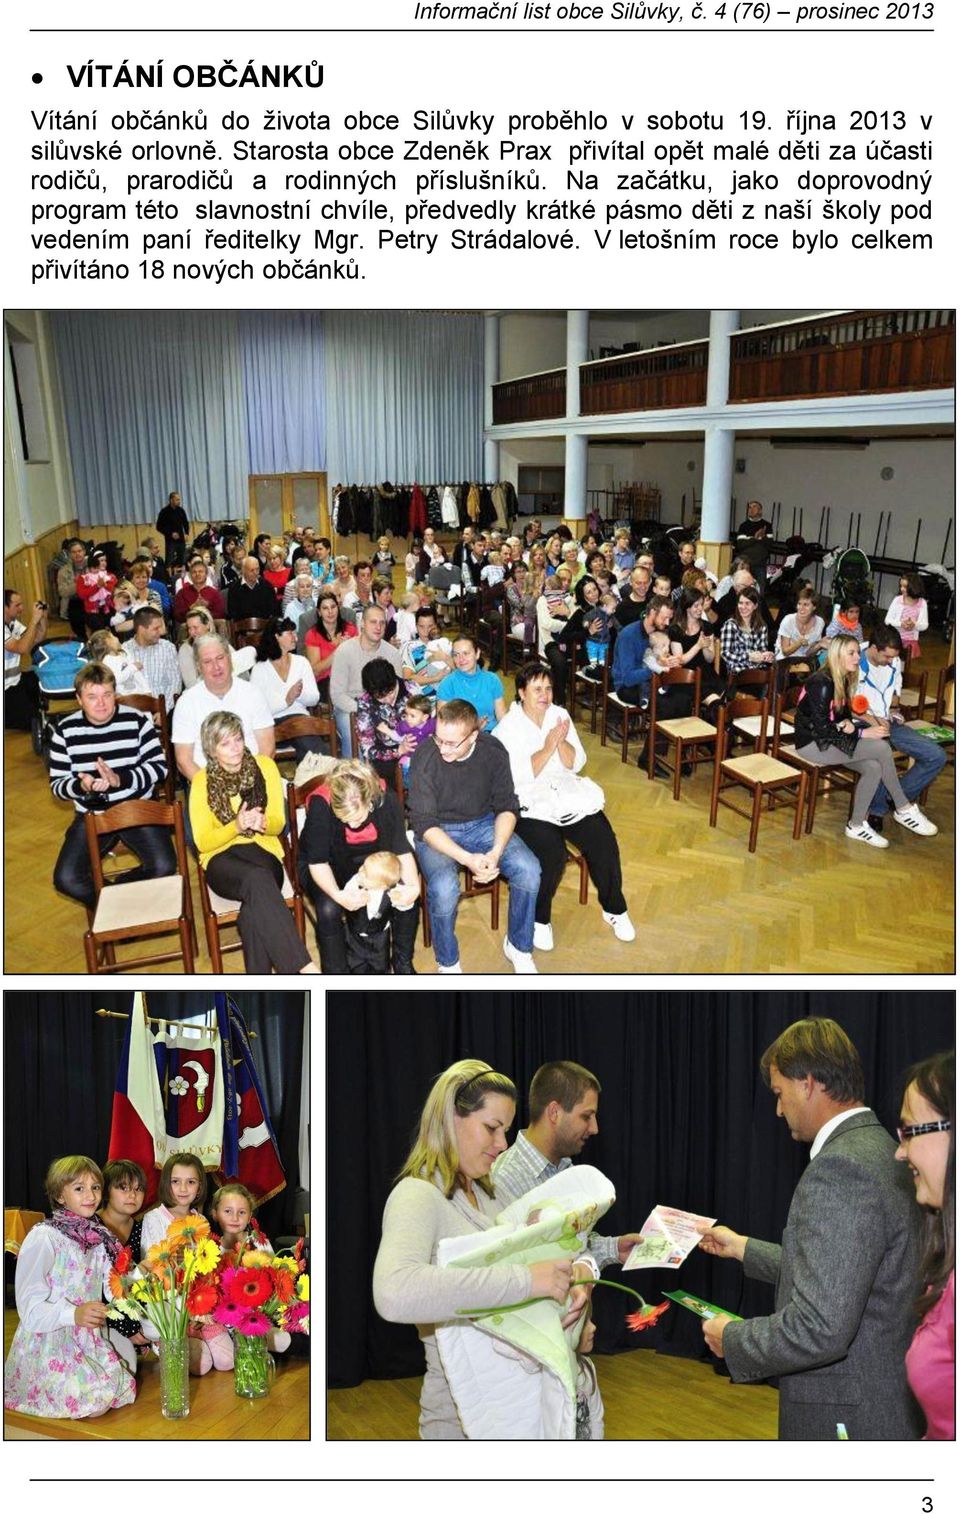 Starosta obce Zdeněk Prax přivítal opět malé děti za účasti rodičů, prarodičů a rodinných příslušníků.